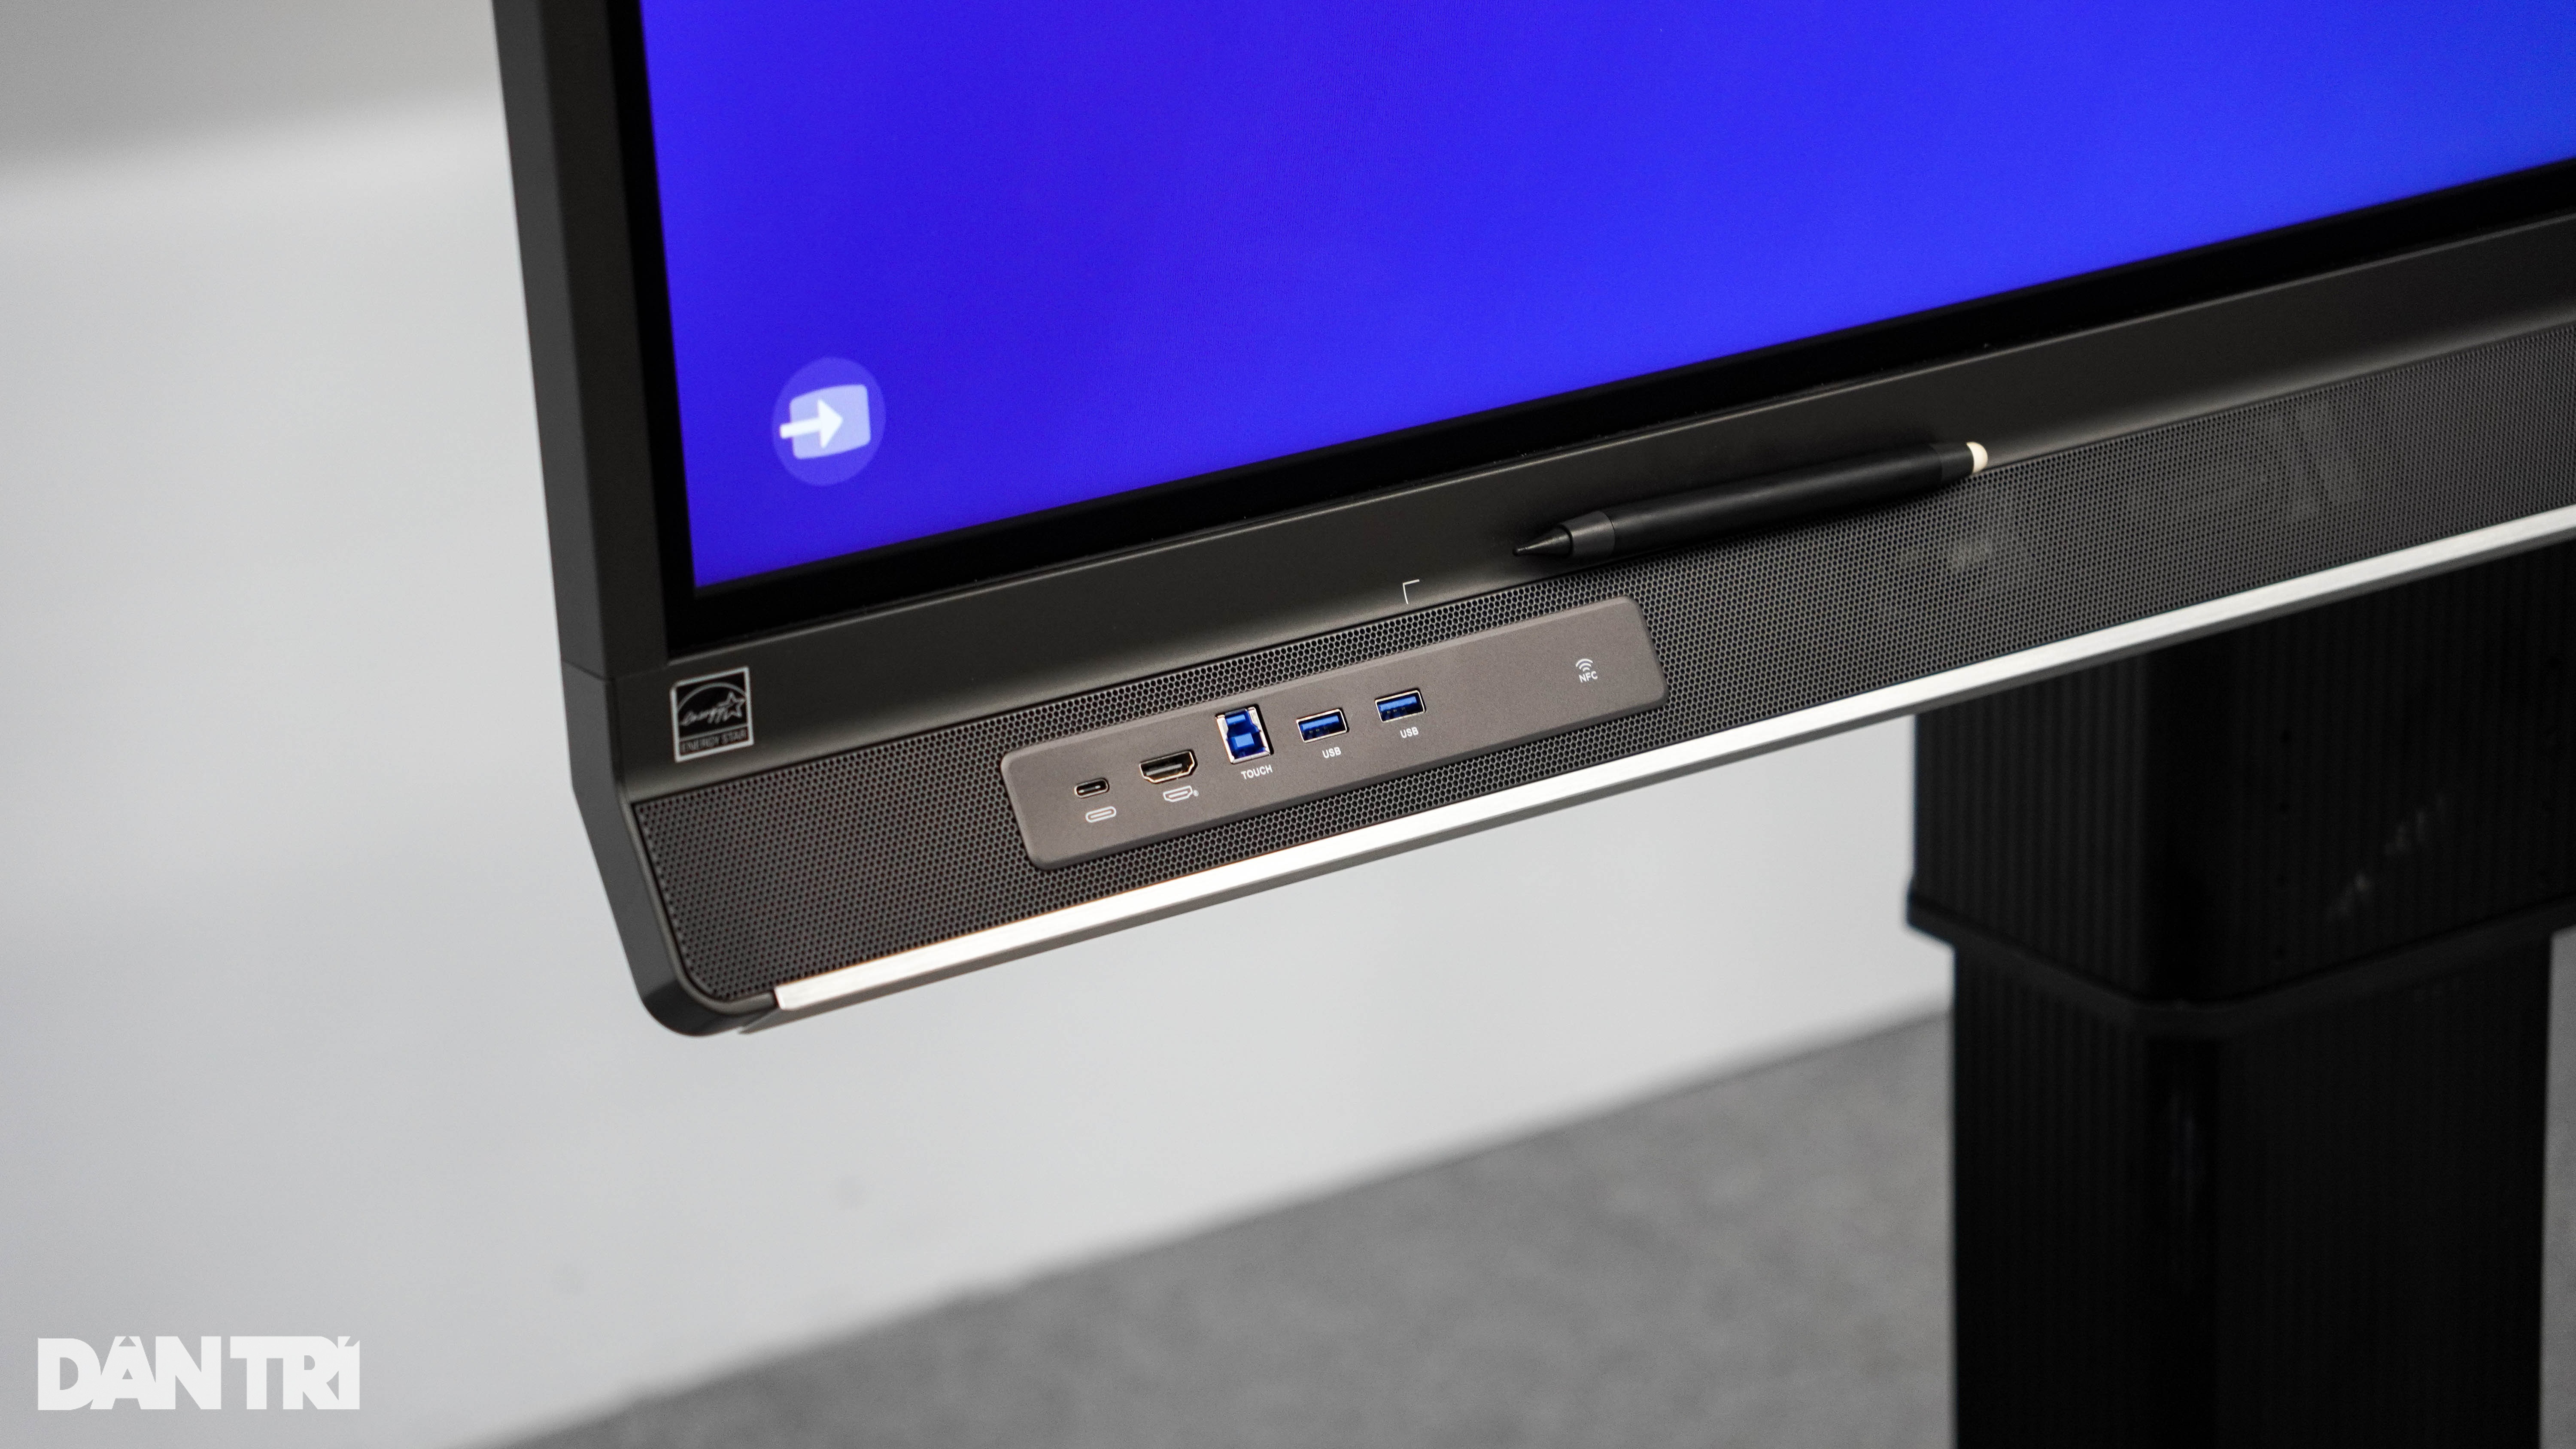 Cạnh dưới được tích hợp sẵn loa ngoài cũng như các cổng kết nối thiết bị ngoại vi bao gồm cổng USB-C, cổng HDMI, cổng USB-A và hỗ trợ nhận diện thẻ NFC.